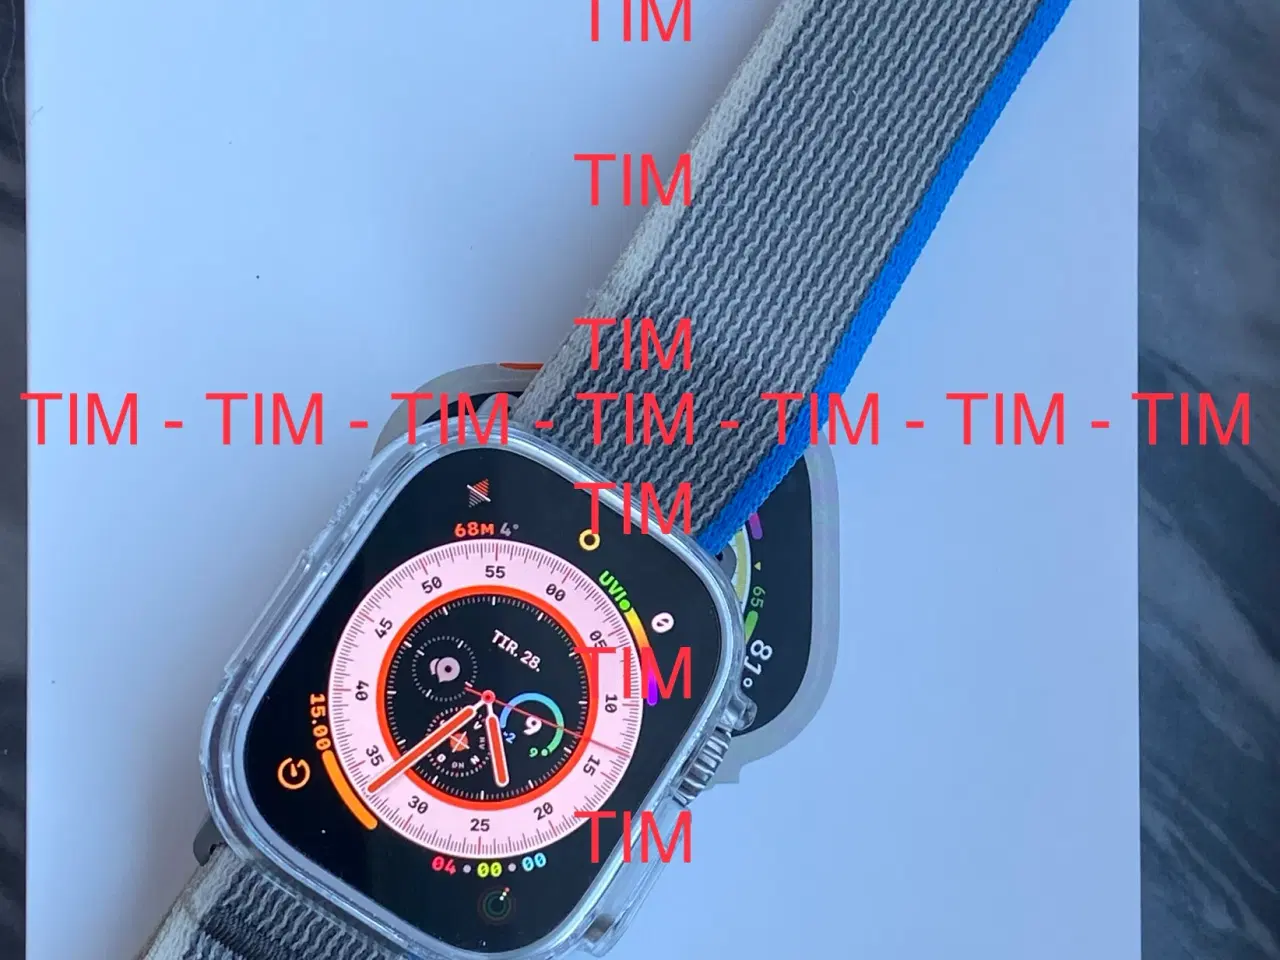 Billede 6 - Apple Watch Ultra 